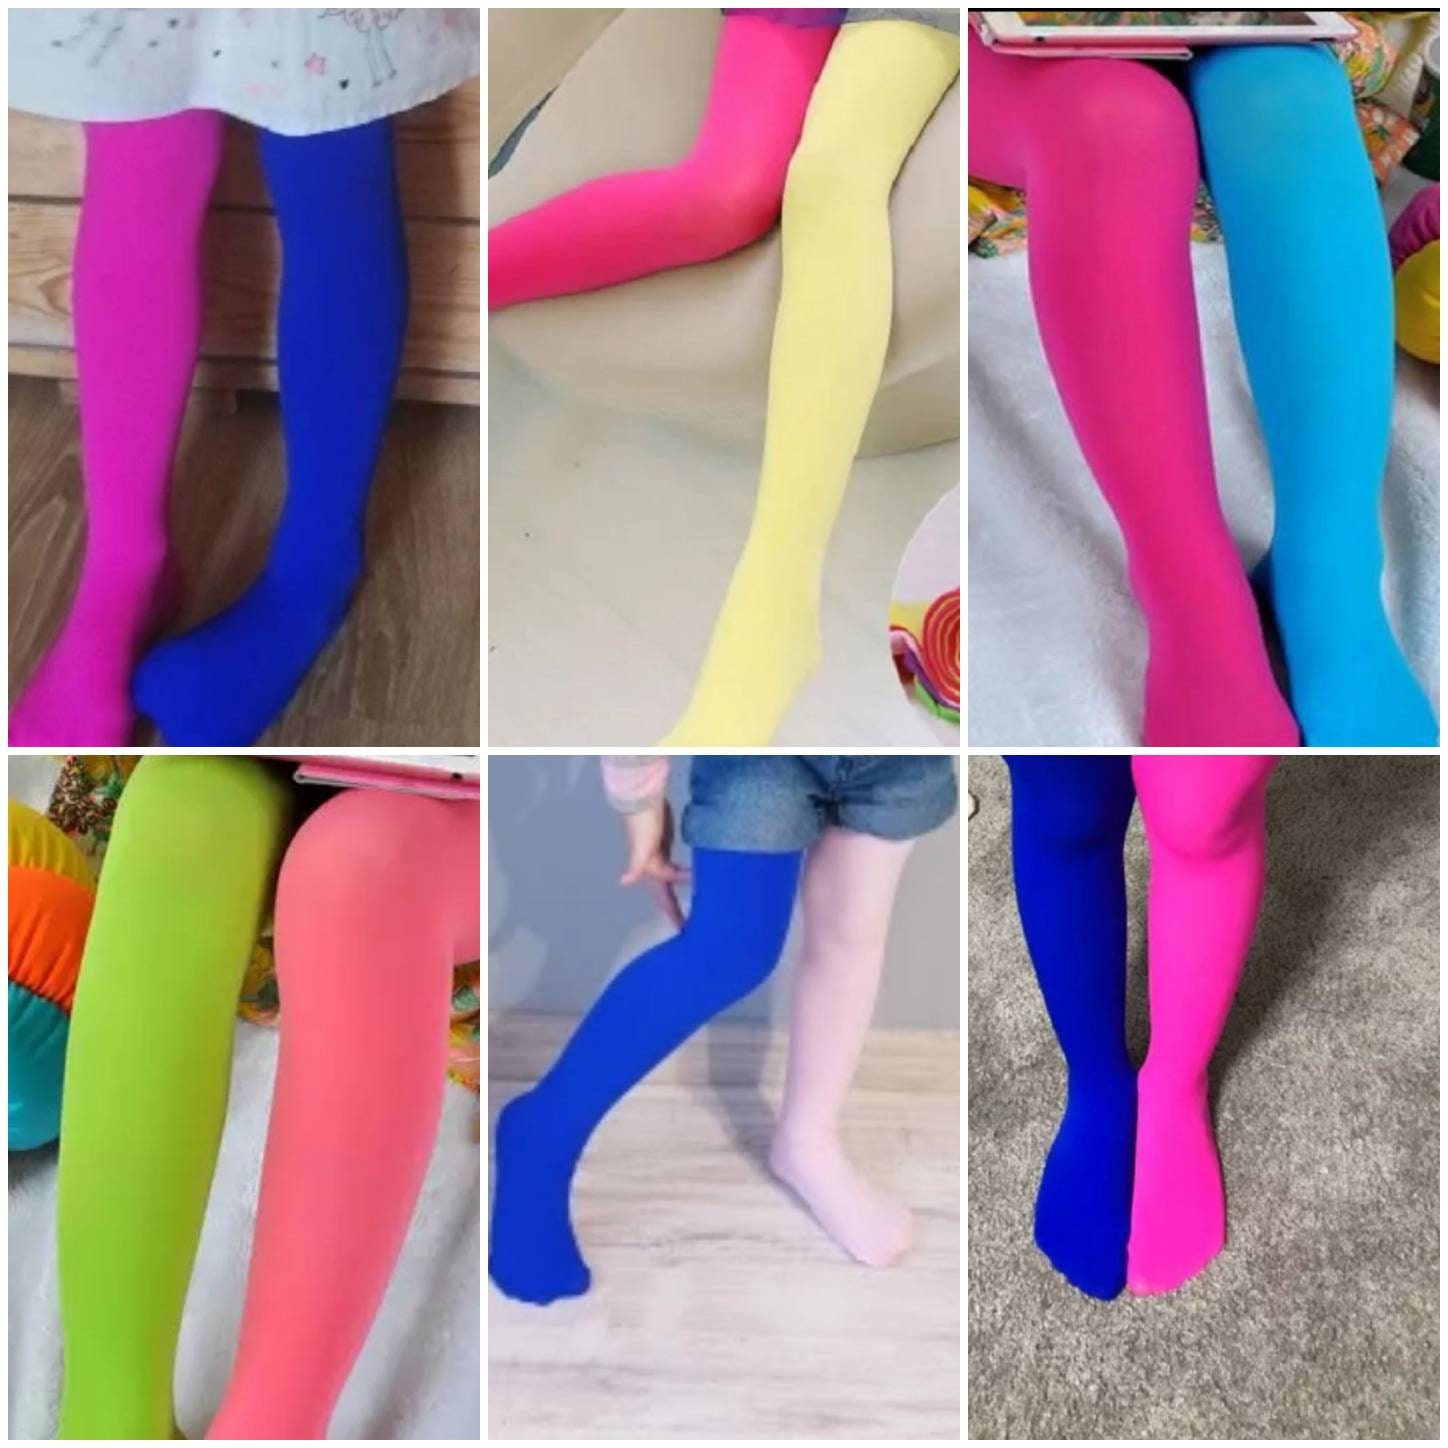 Collants pour filles de deux couleurs différentes sur chaque jambe